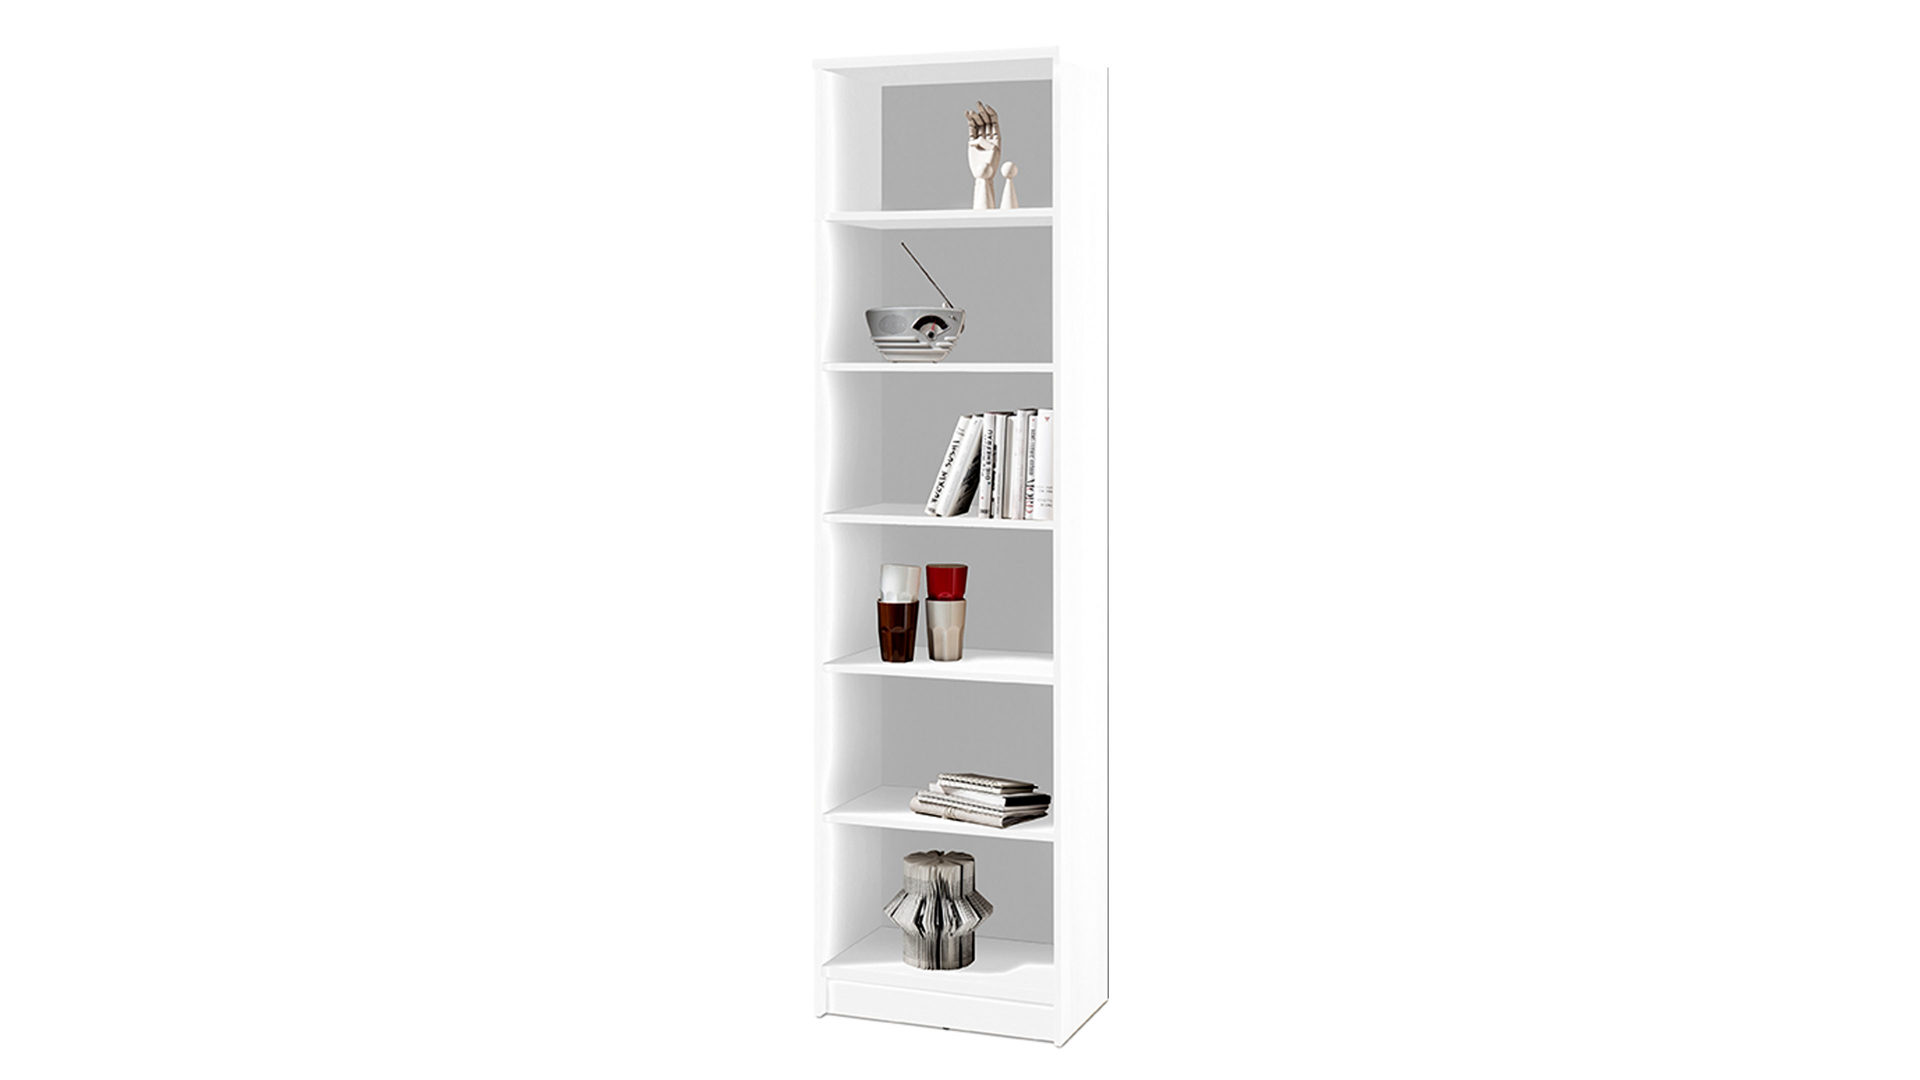 Regal Bega consult aus Holz in Weiß Bücherregal als Wohnzimmermöbel weiße Kunststoffoberflächen – ca. 54 x 198 cm, fünf Böden